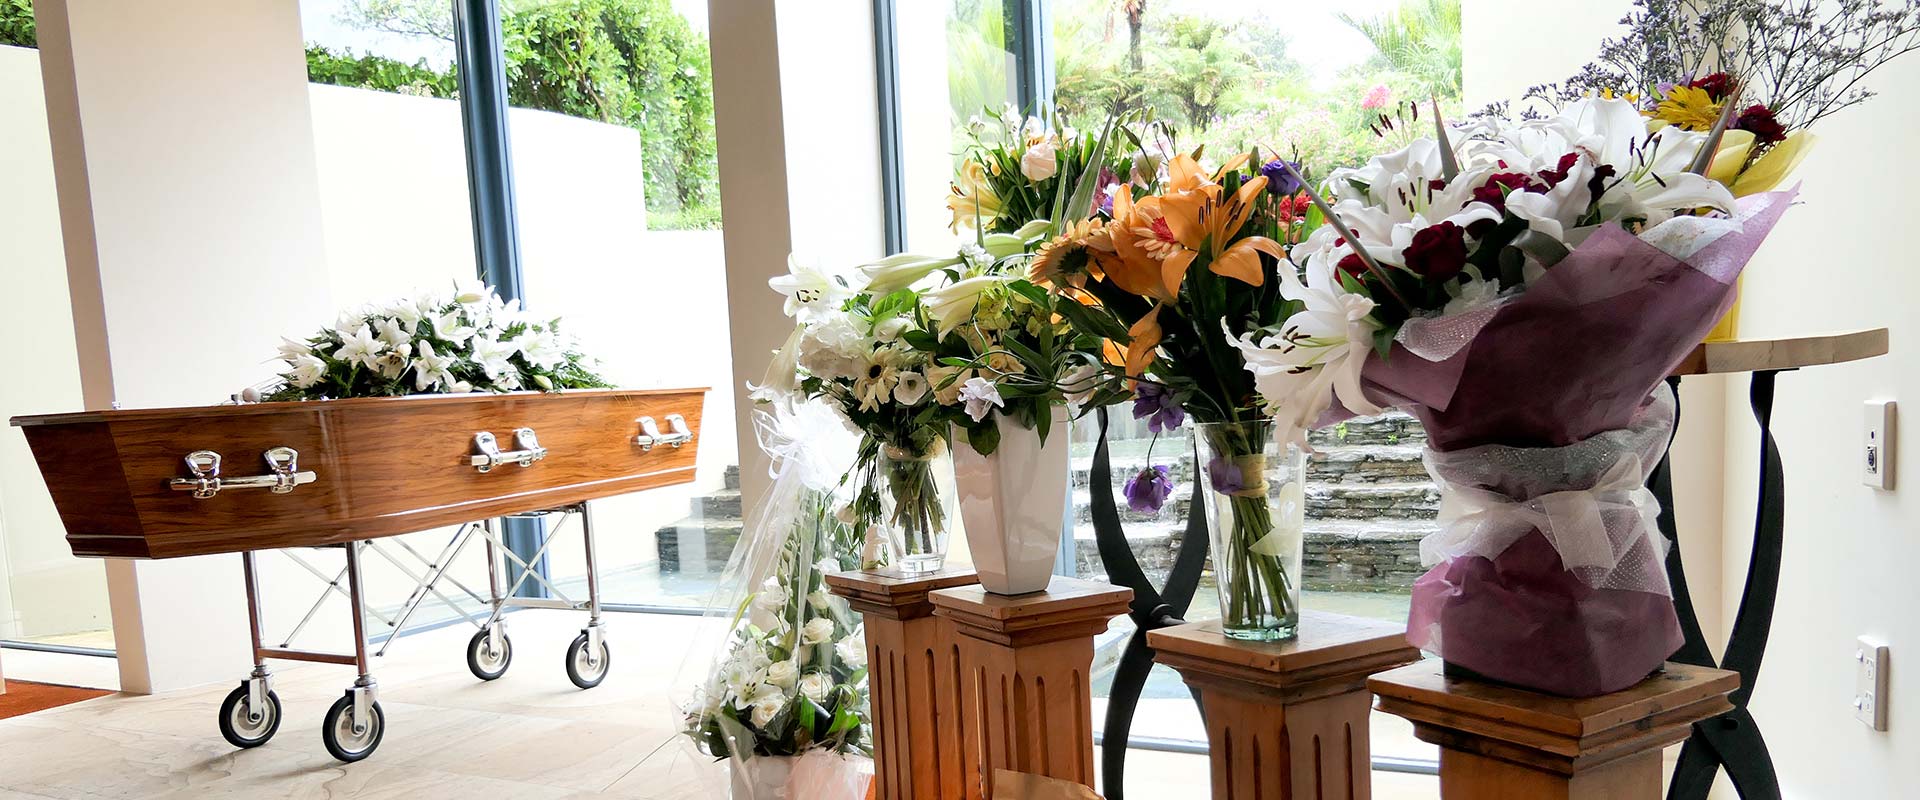 Ataúd en un servicio funeral o cementerio con variedad de arreglos florales 